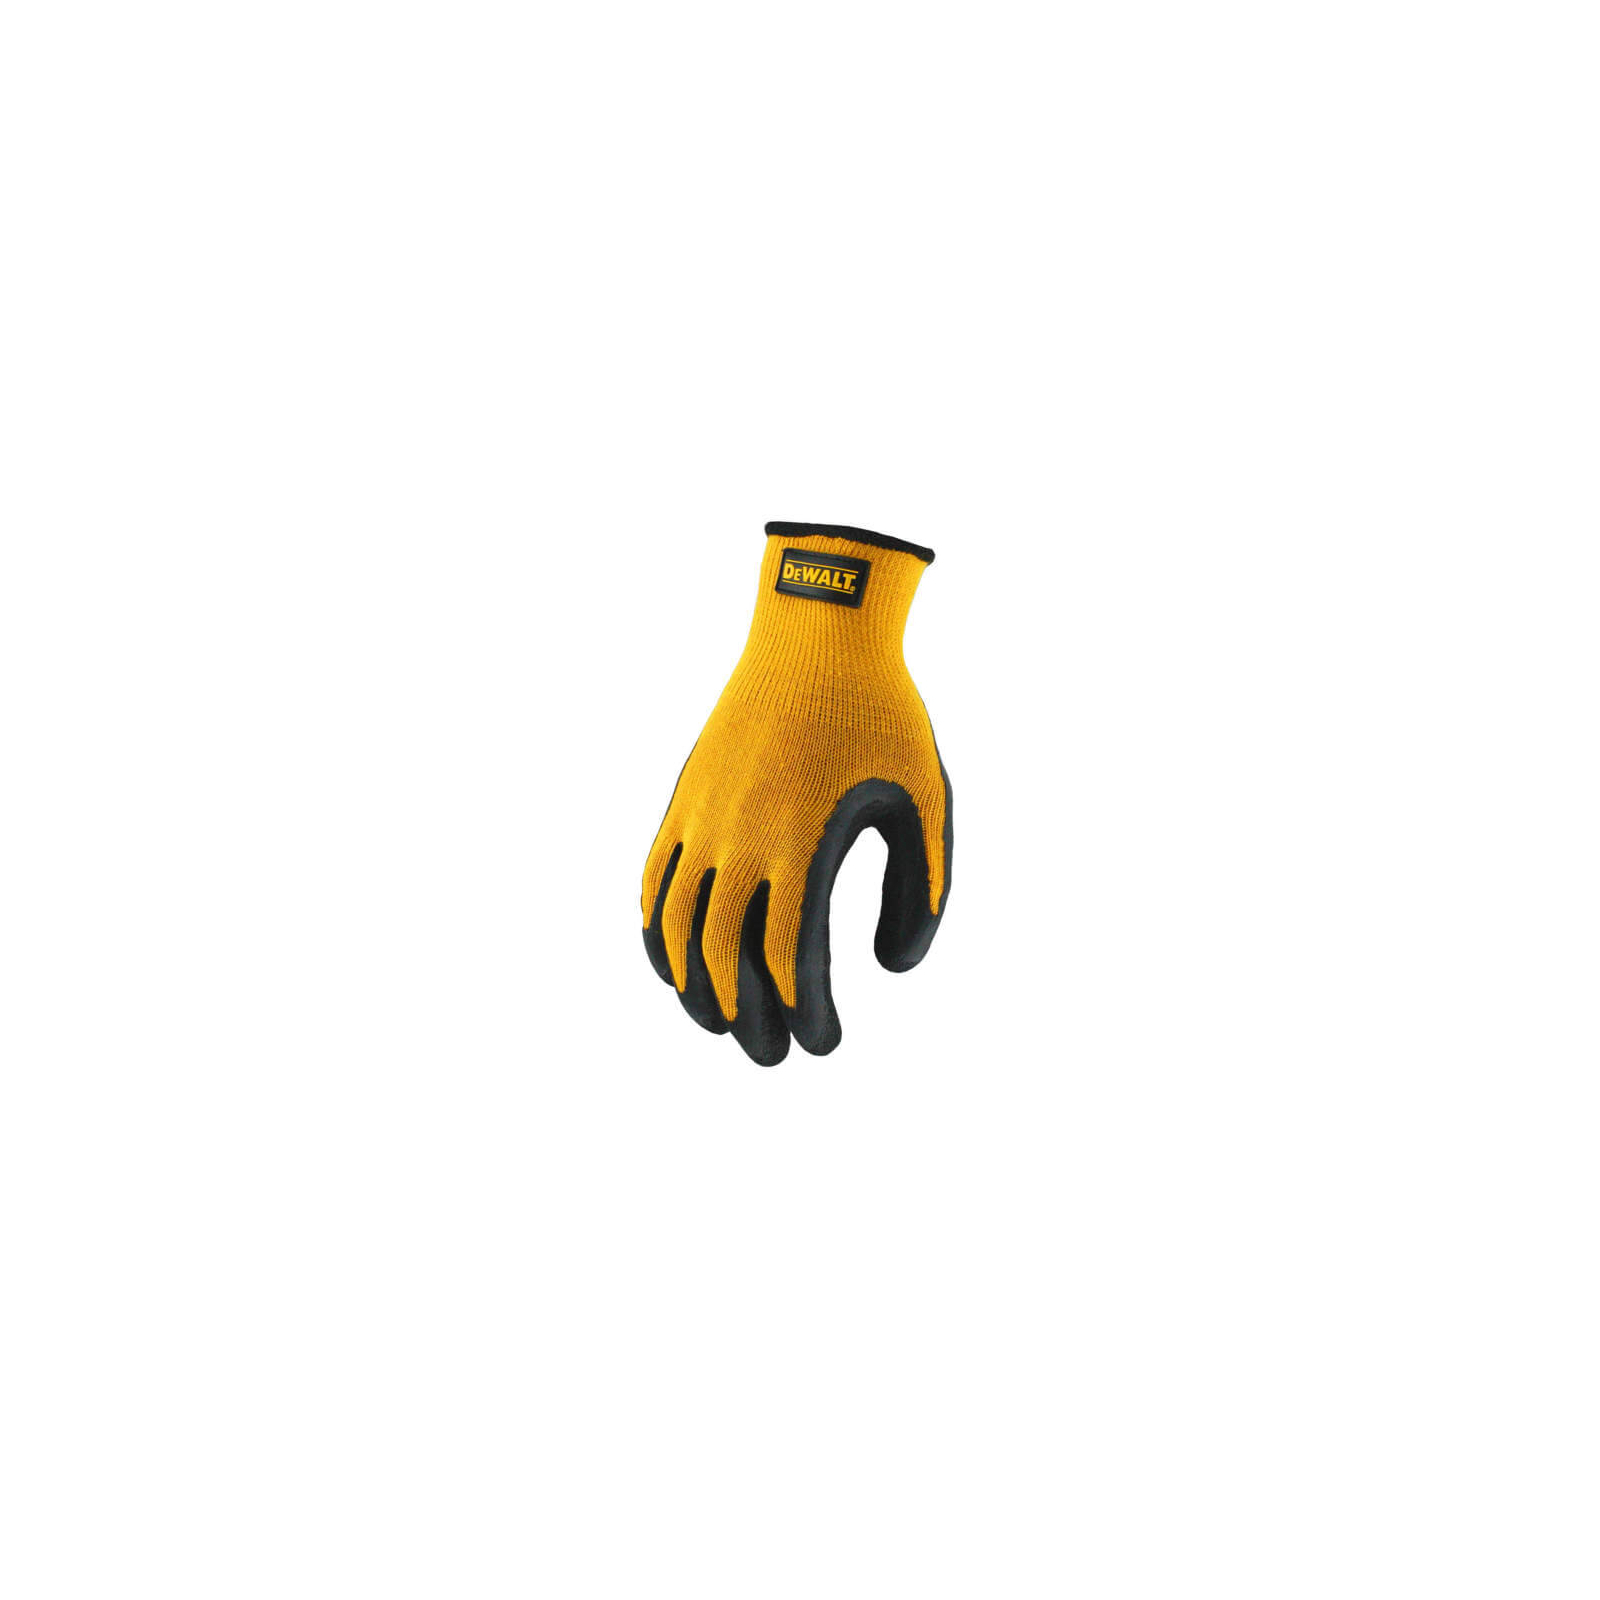 Захисні рукавиці DeWALT розм. L/9, з гумовим покриттям (DPG70L) зображення 2